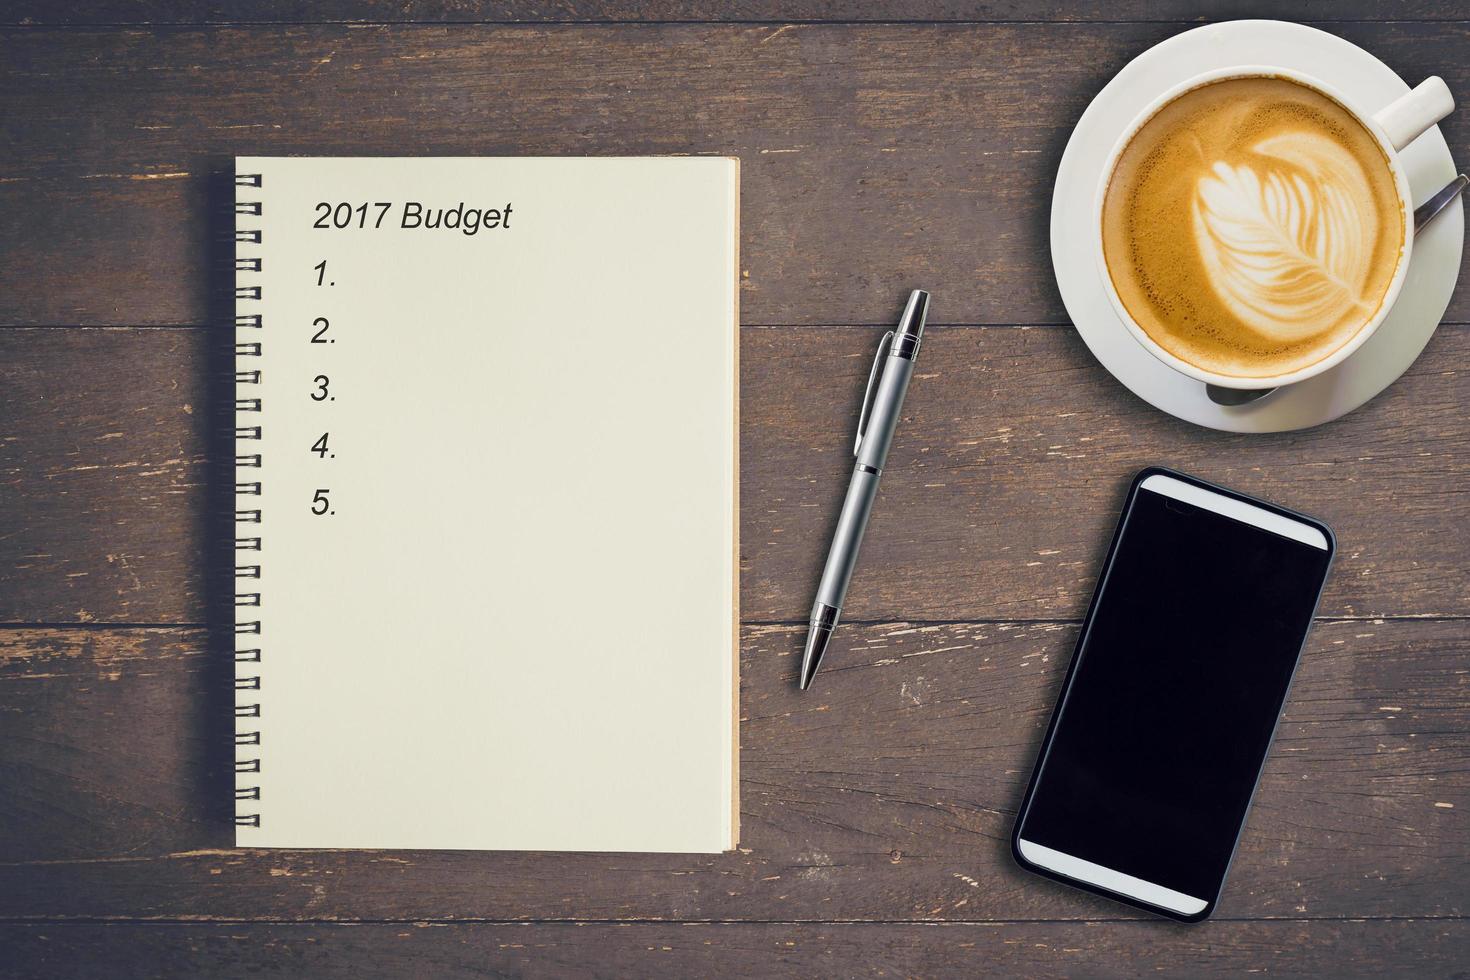 företag begrepp - topp se anteckningsbok skrivning budget 2017, penna, kaffe kopp, och telefon på trä tabell. foto